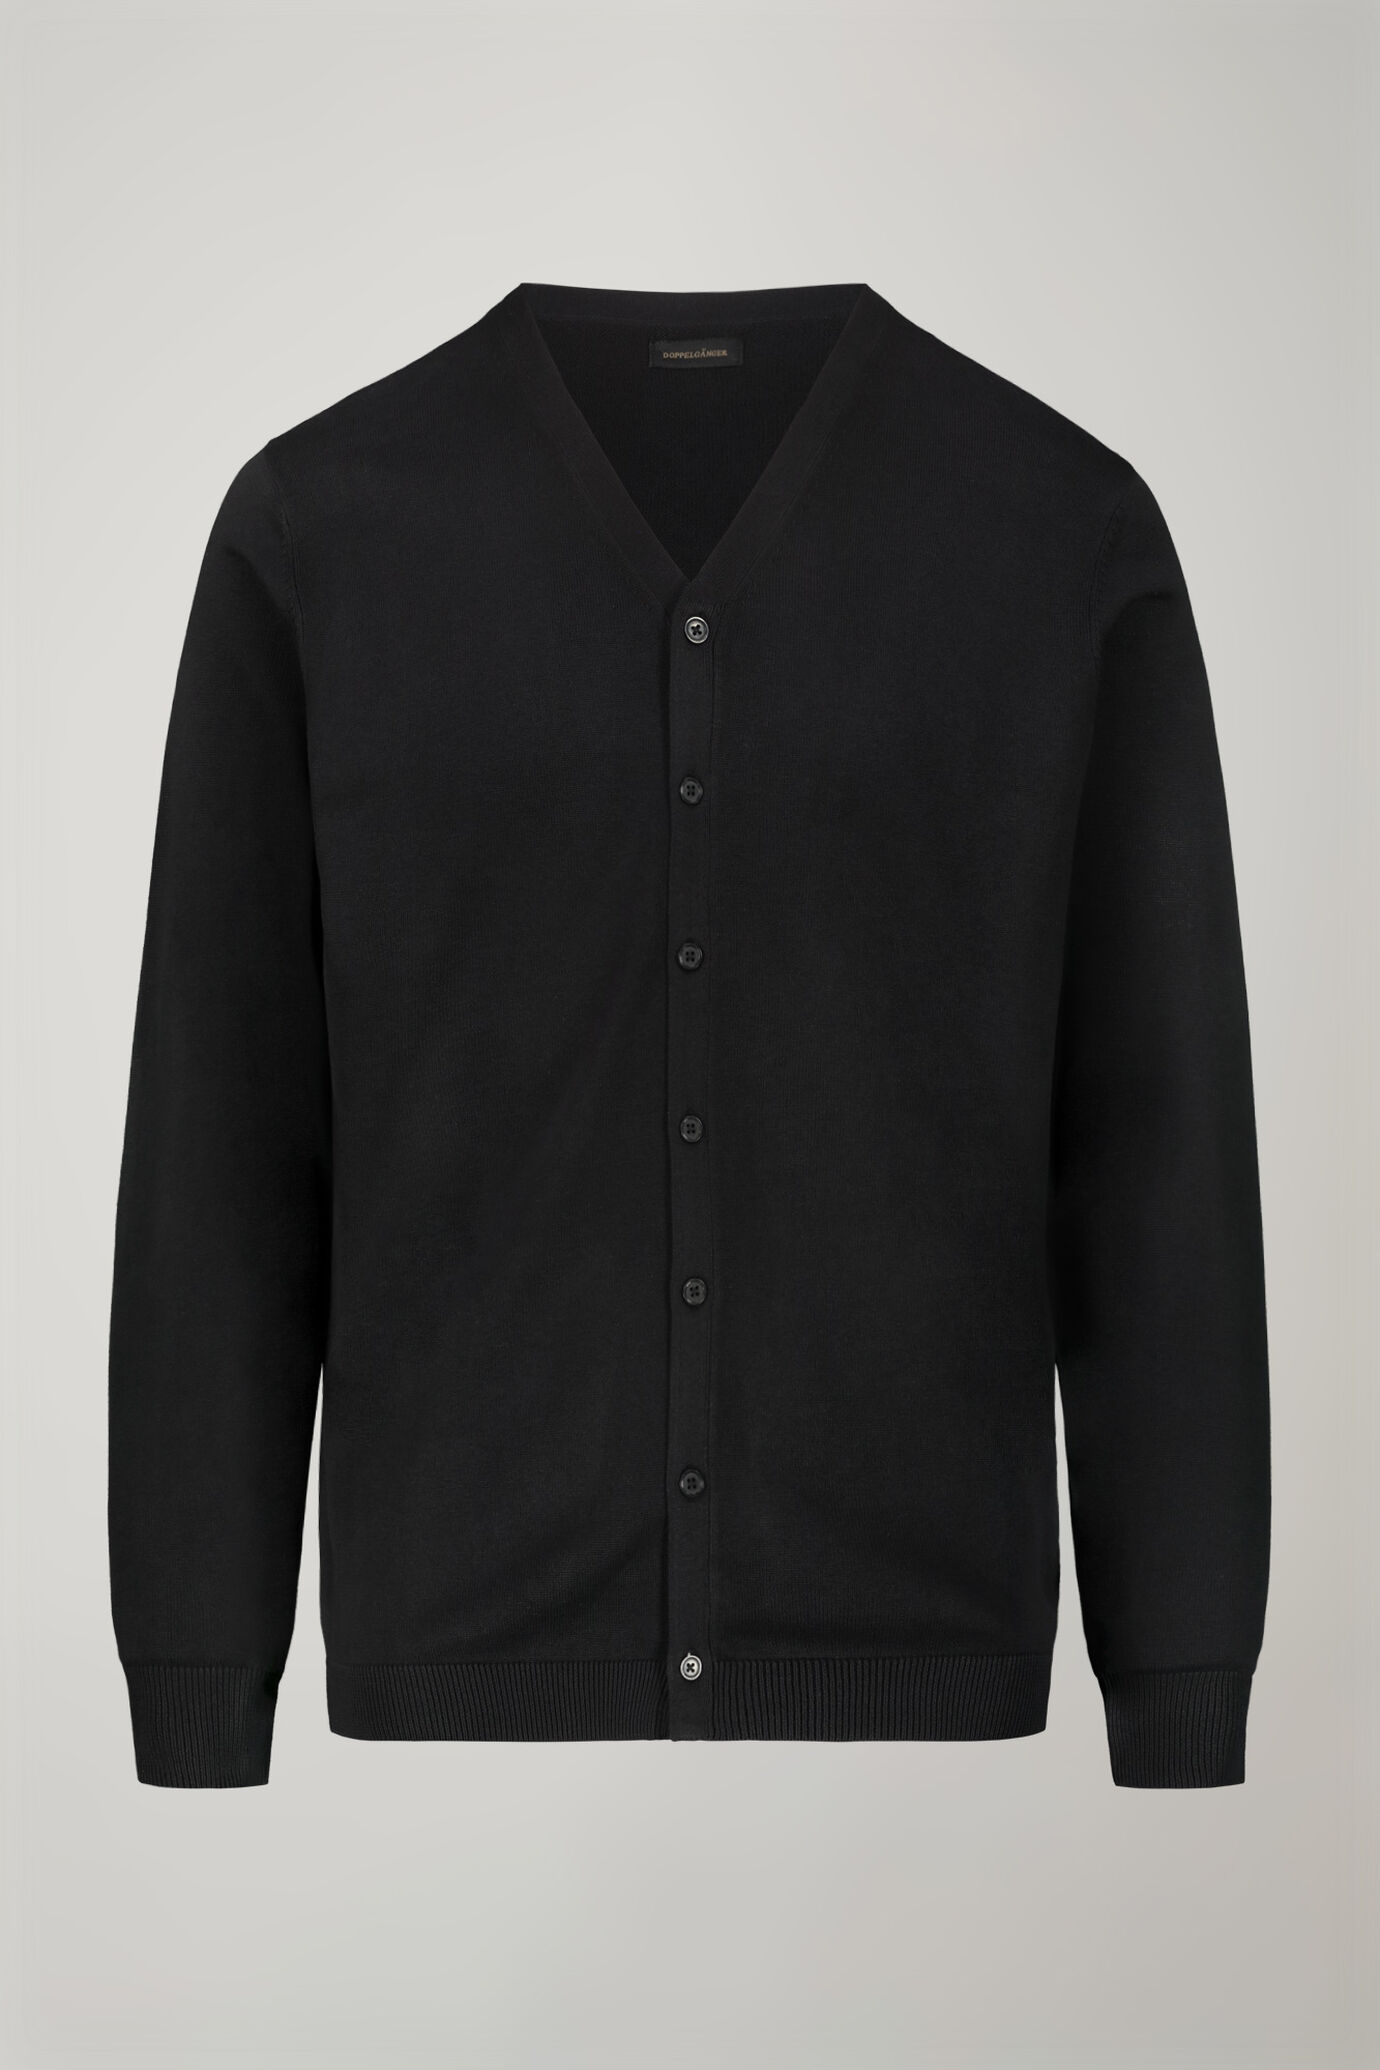 Men's sweater V collar 100% cotton regular fit image number 4